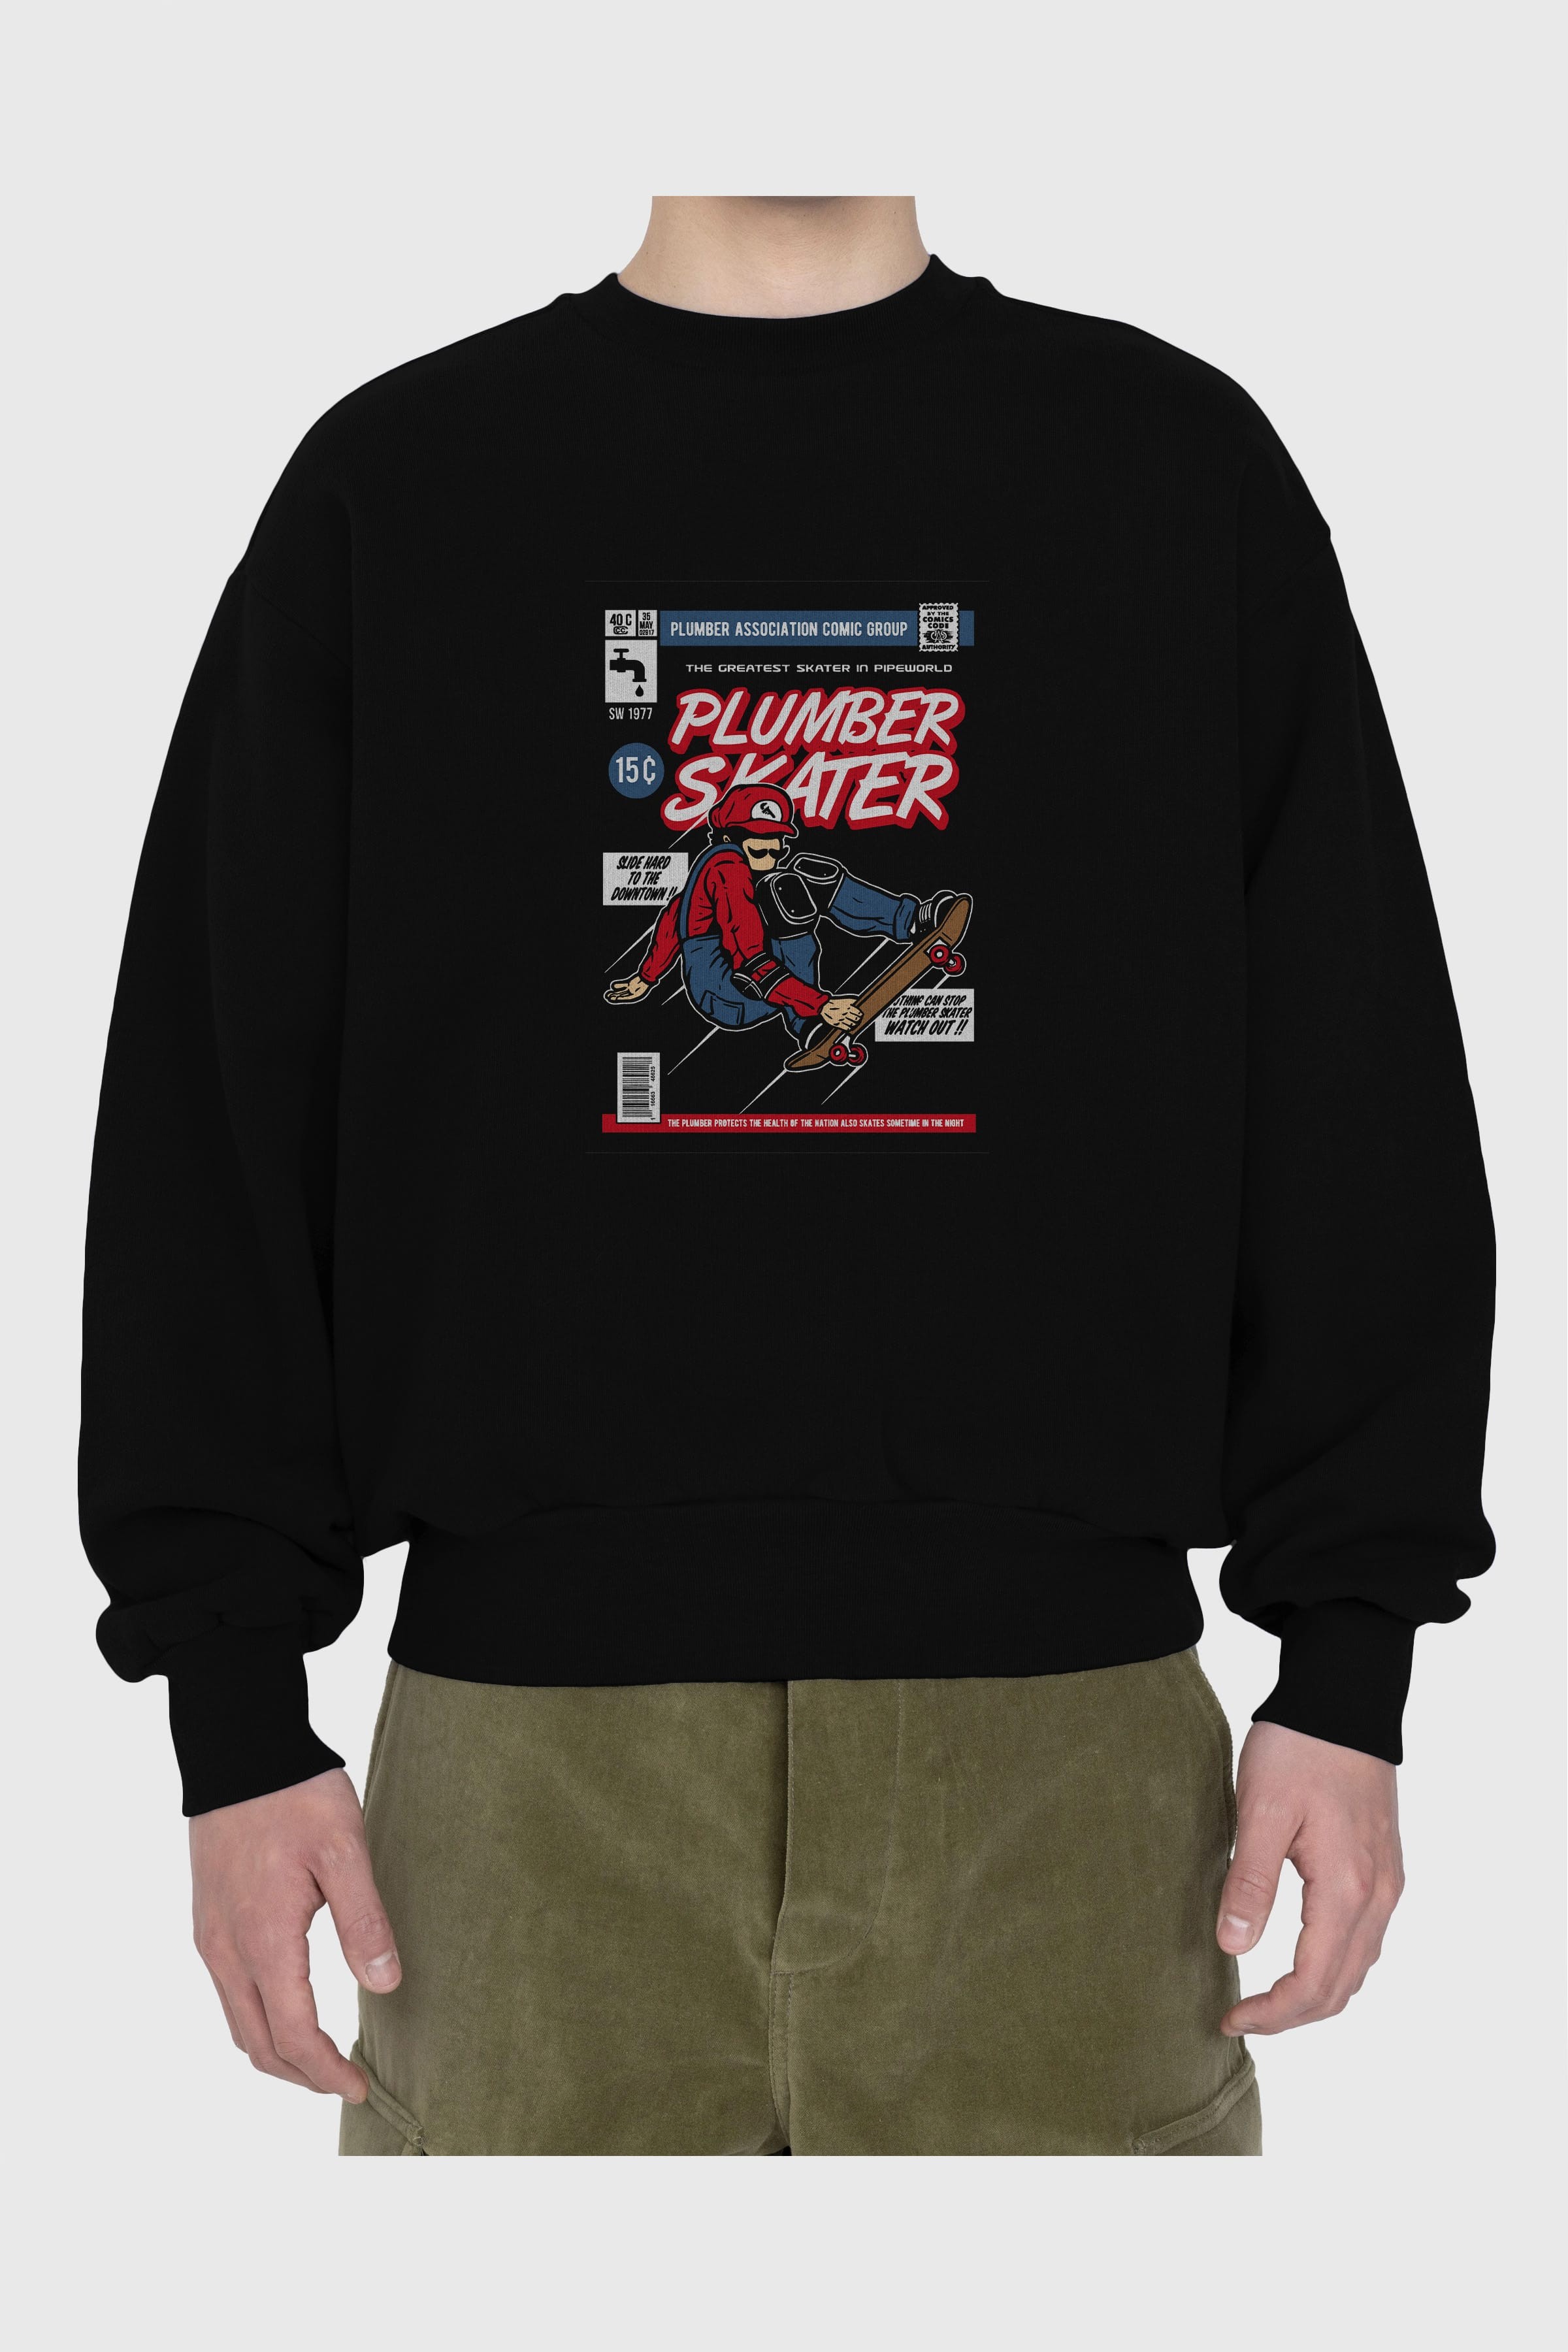 Plumber Skater Ön Baskılı Oversize Sweatshirt Erkek Kadın Unisex